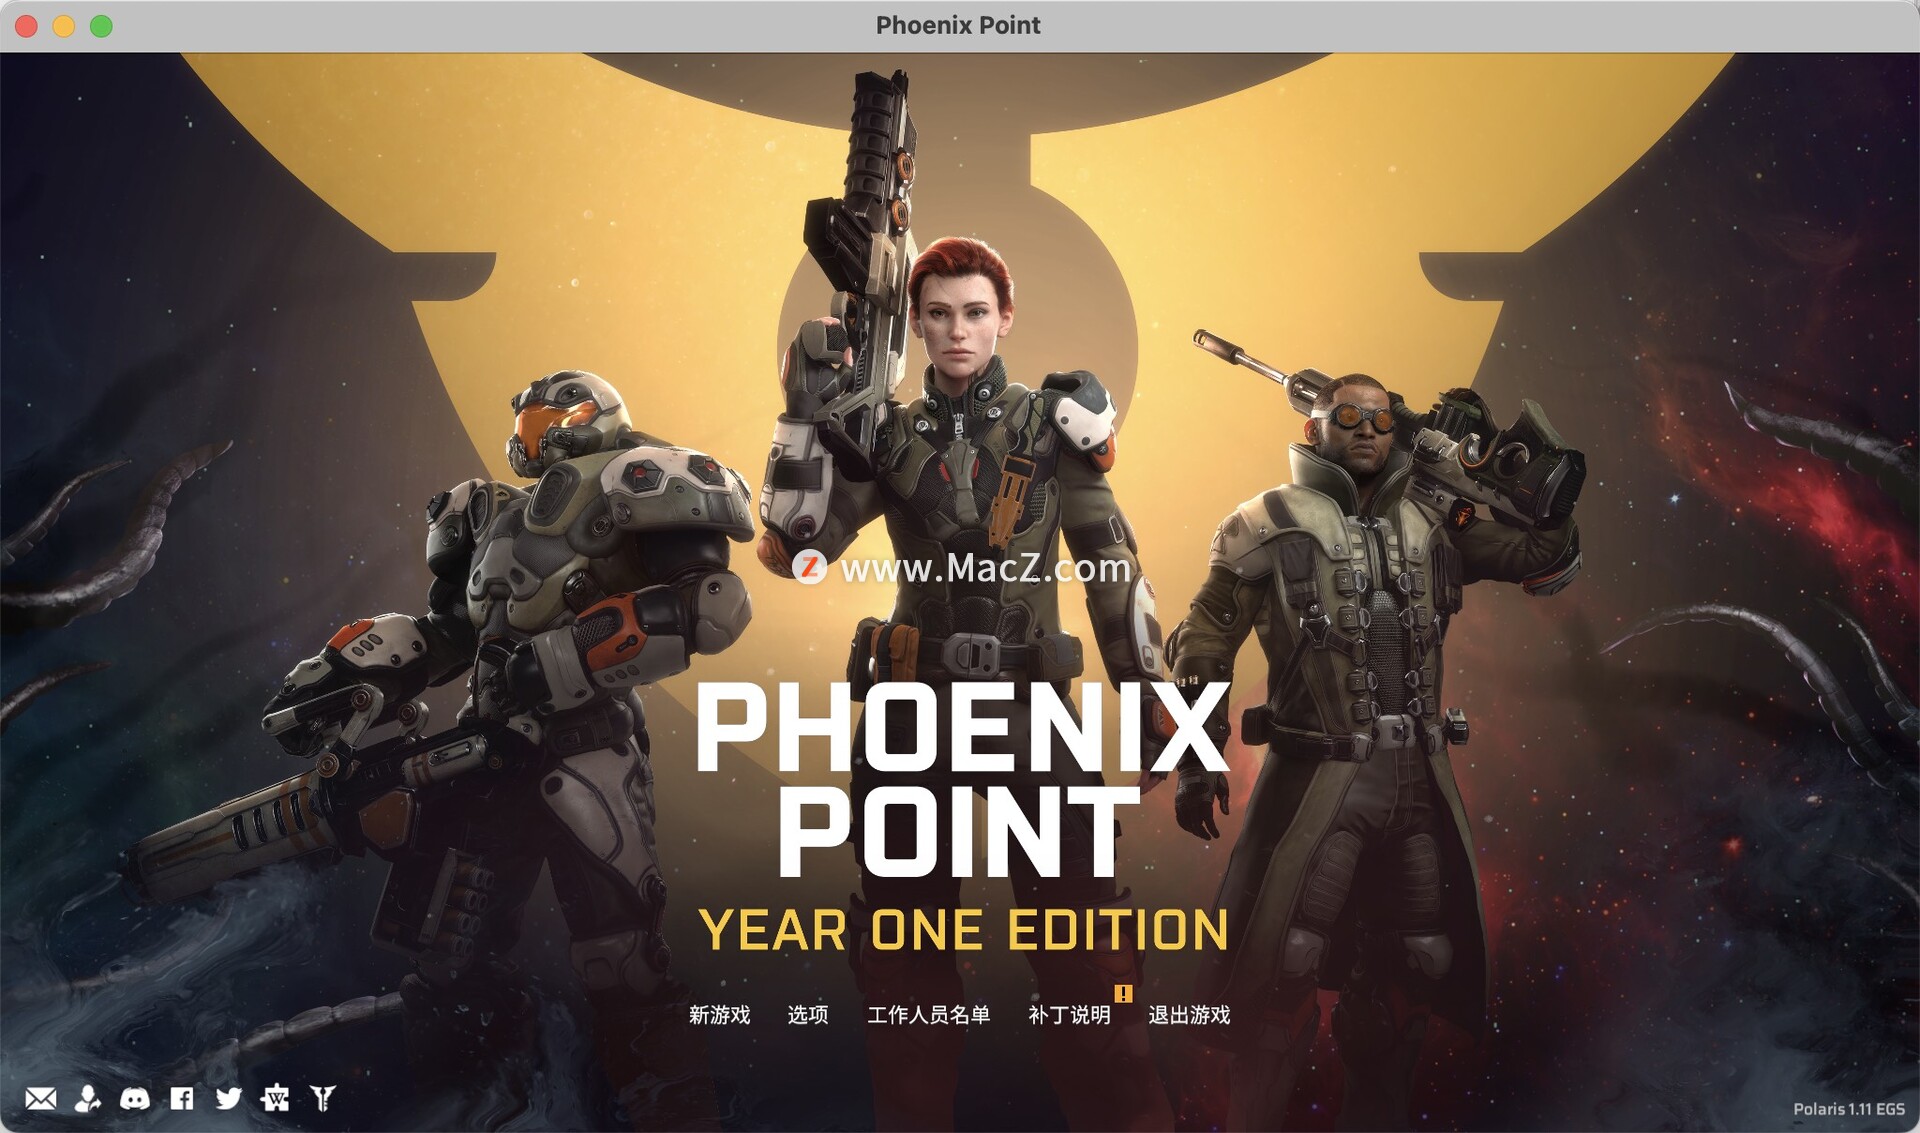 凤凰点(Phoenix Point) 回合制策略游戏 for Mac 附dlc 21.93 GB 简体中文